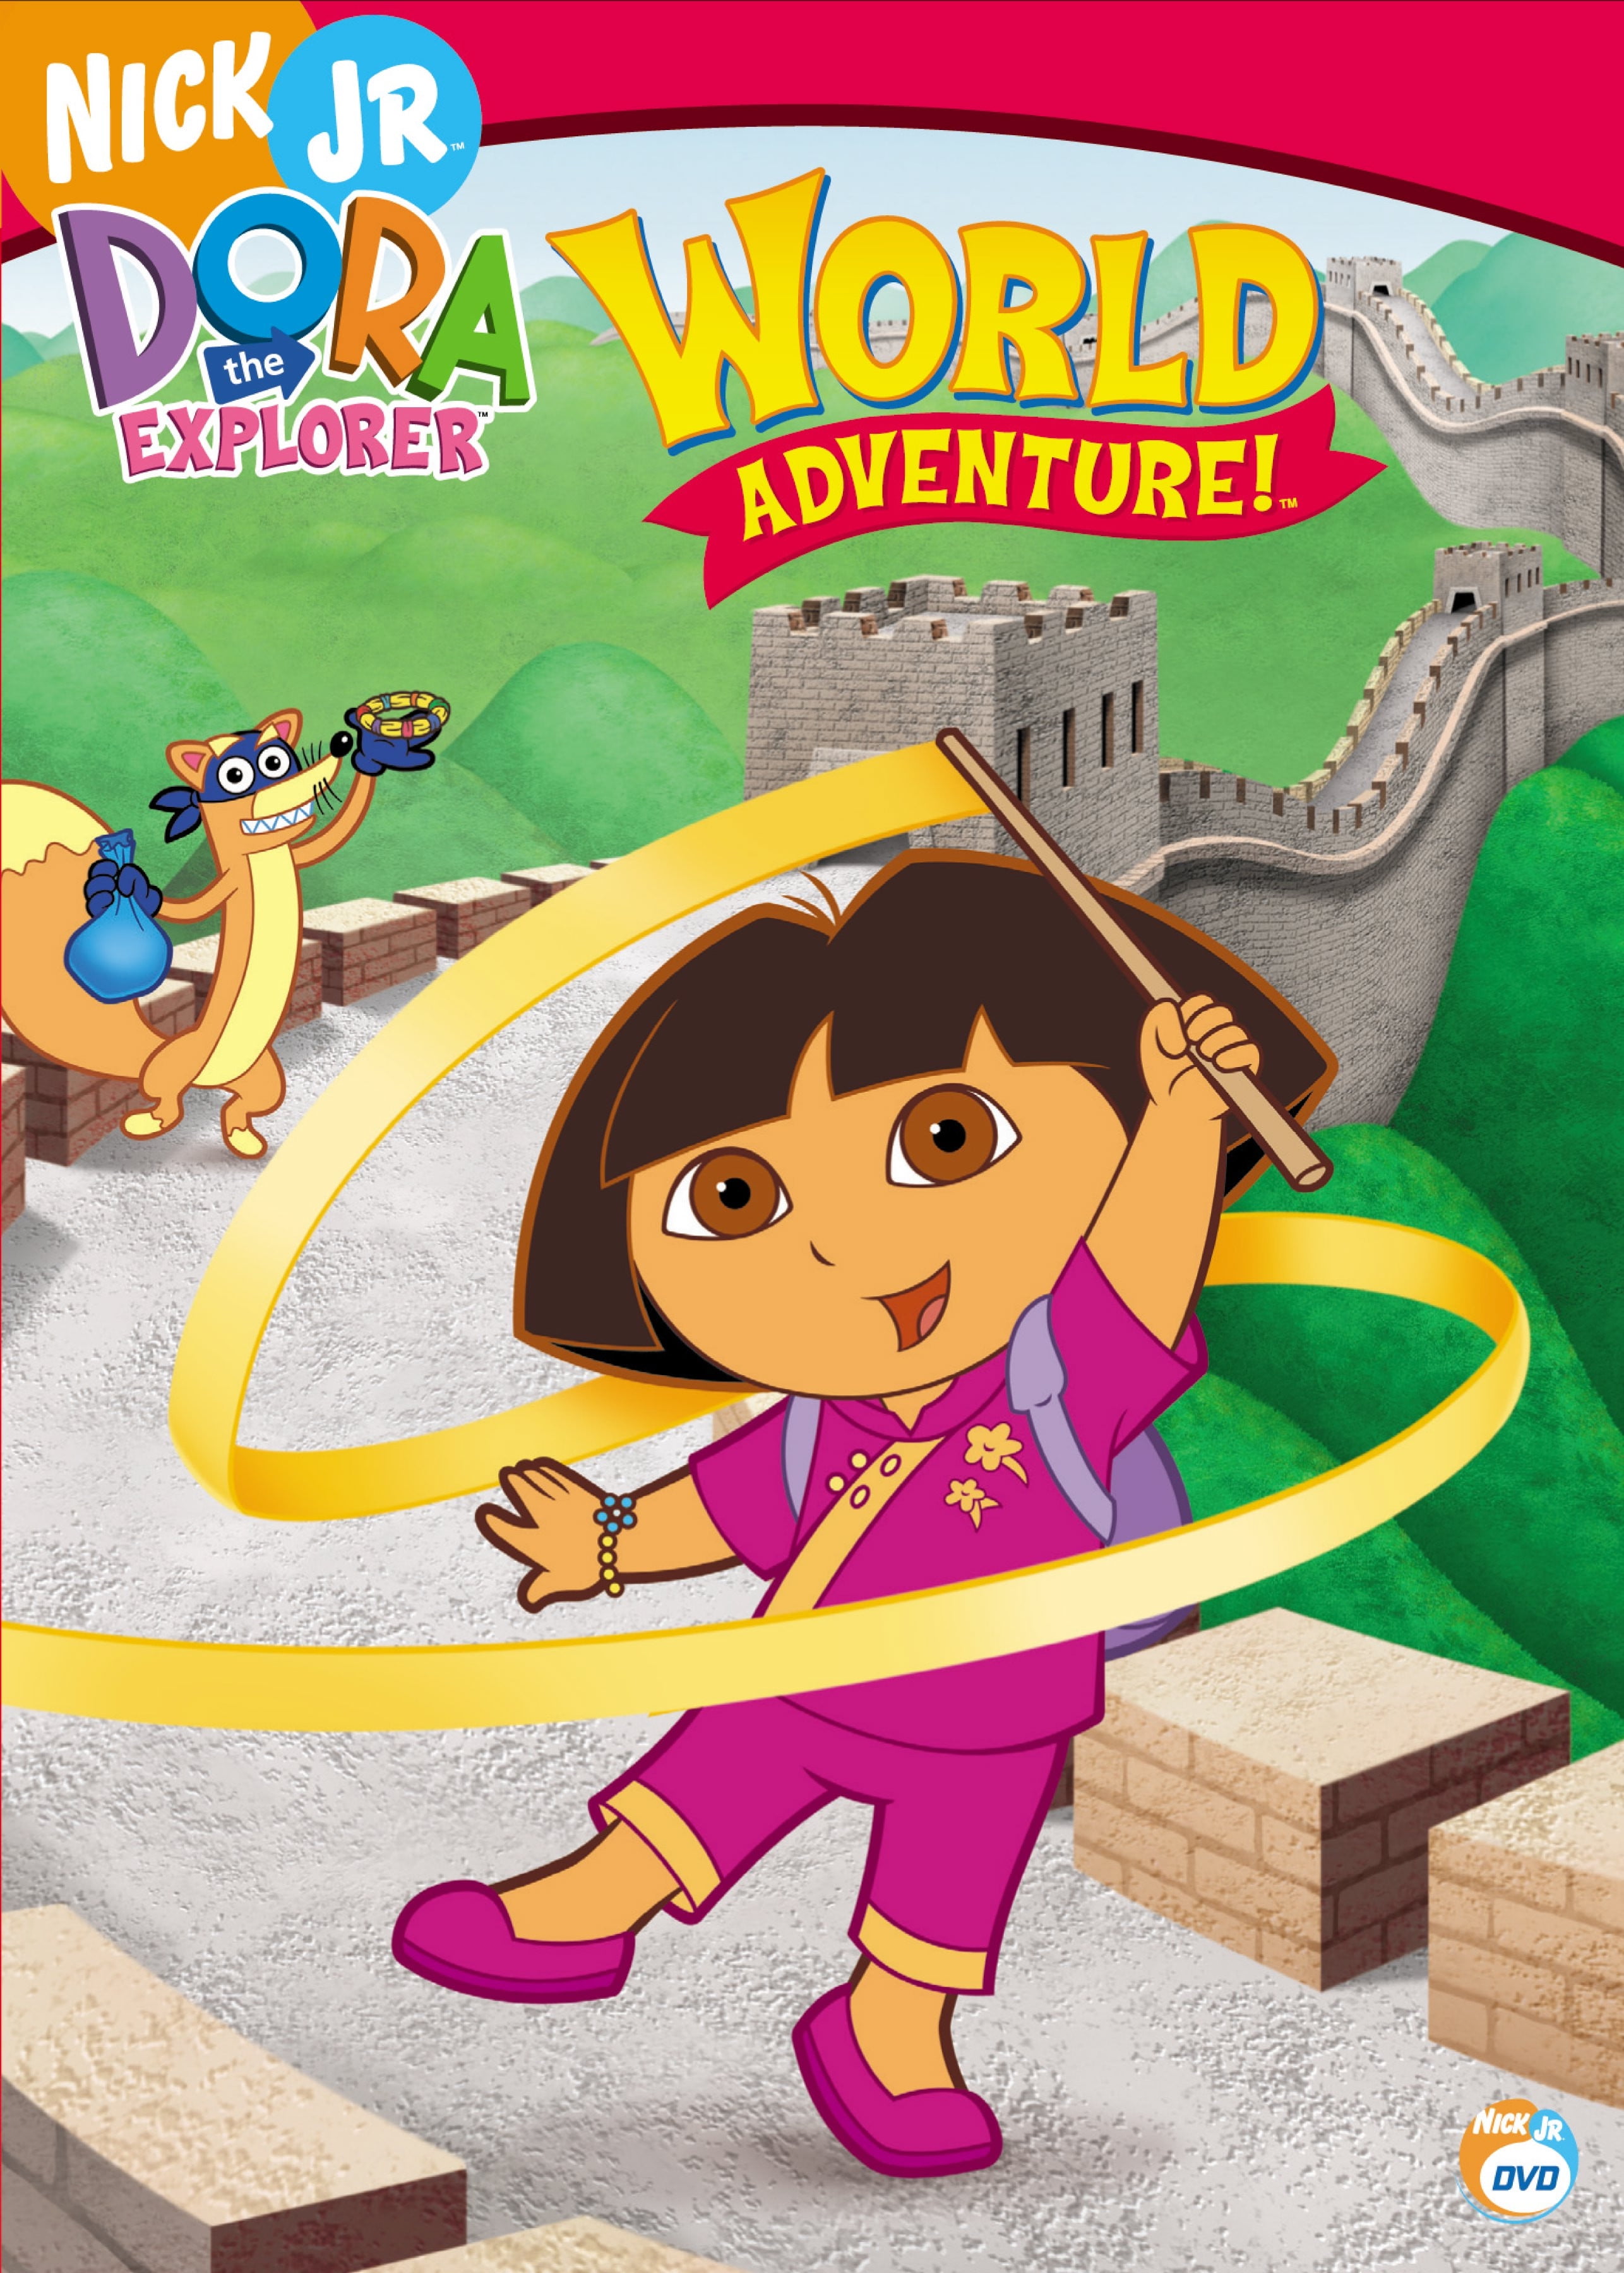 Dora The Explorer Dvd Collection 2